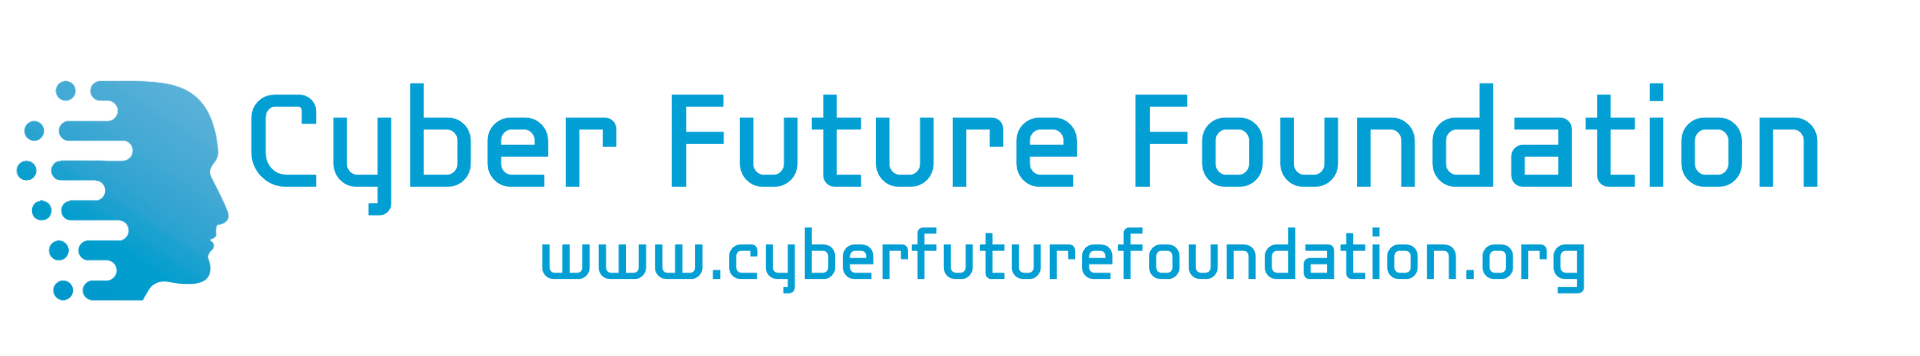 Cyber Future Foundation